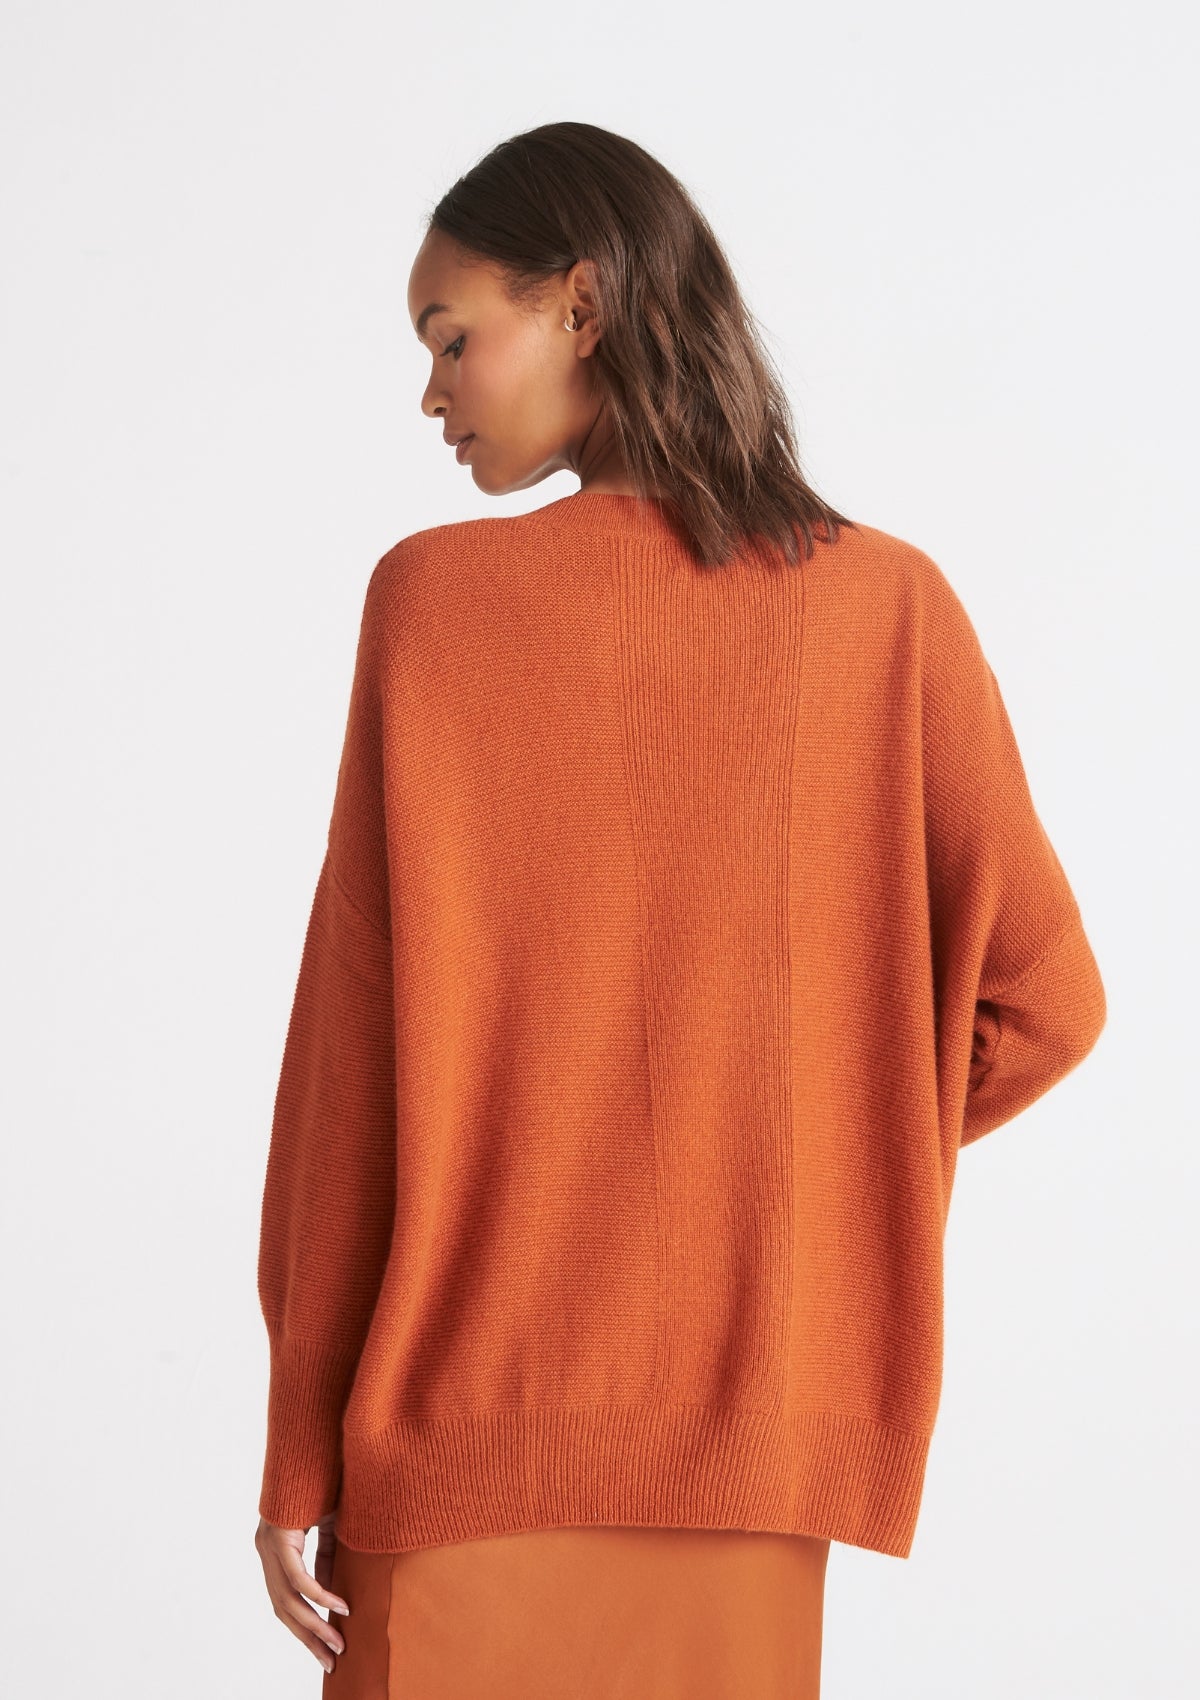 Relaxed V Neck Sweater in Ginger Orange